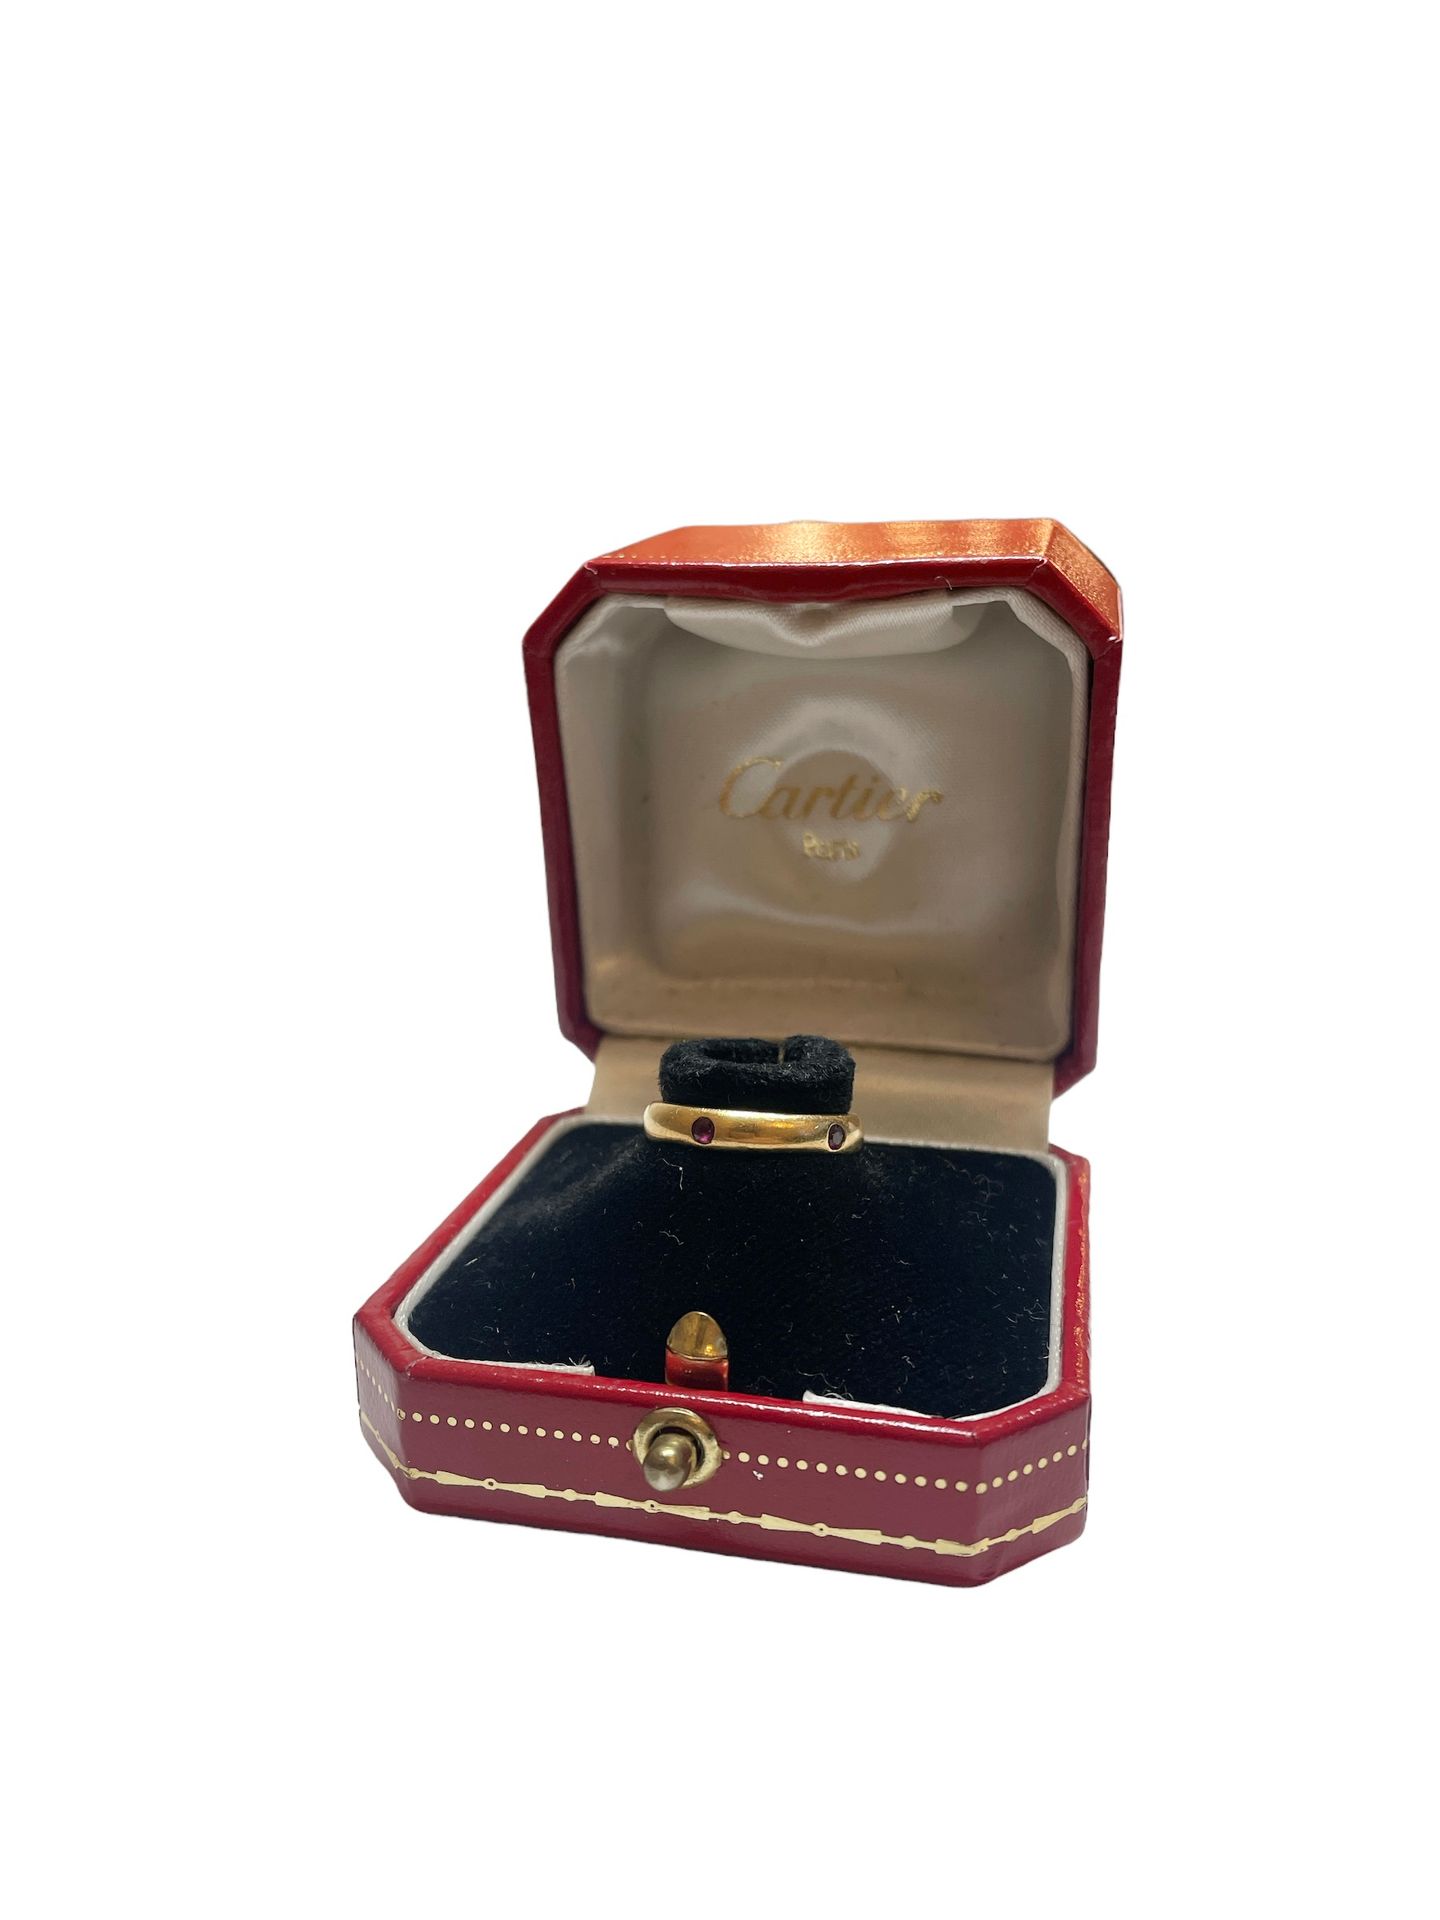 Null 卡地亚
18K黄金戒指，750千分之一，镶嵌小红宝石。箱子。
签名：CARTIER 1992
TDD : 51
毛重：5克